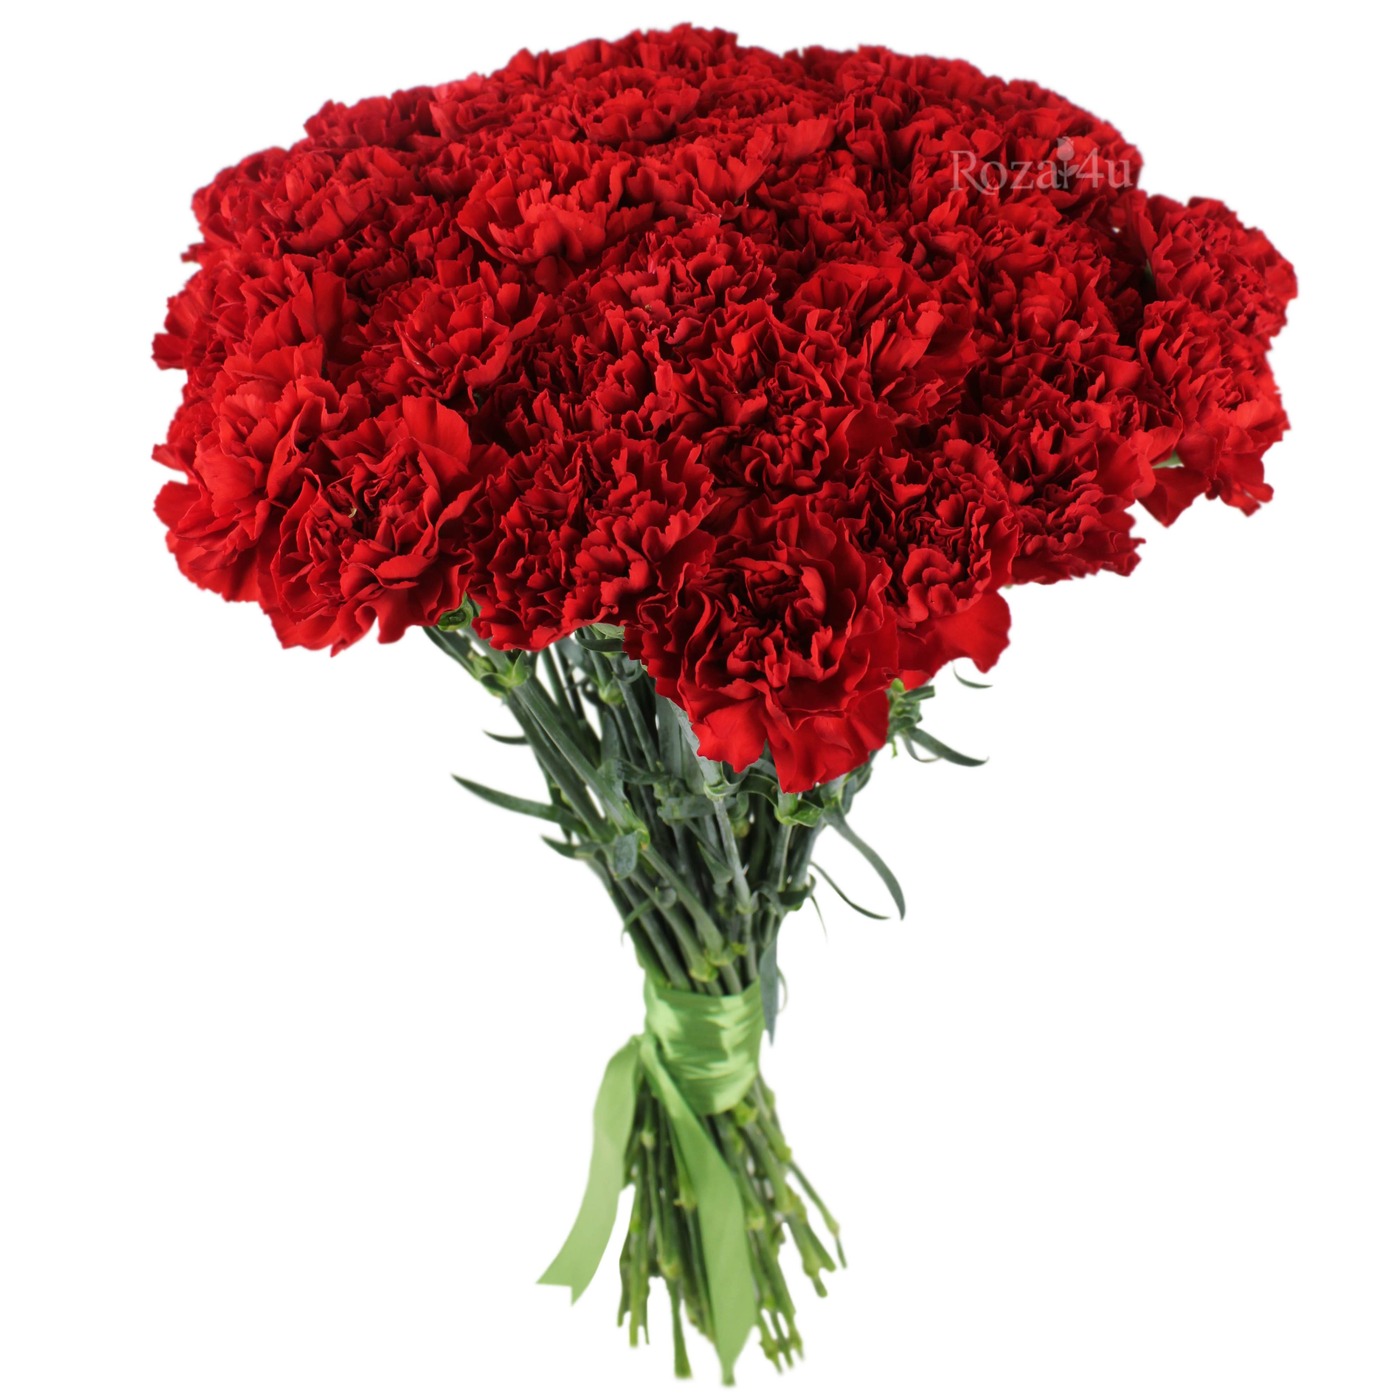 Купить гвоздики с доставкой по москве цена черной розы